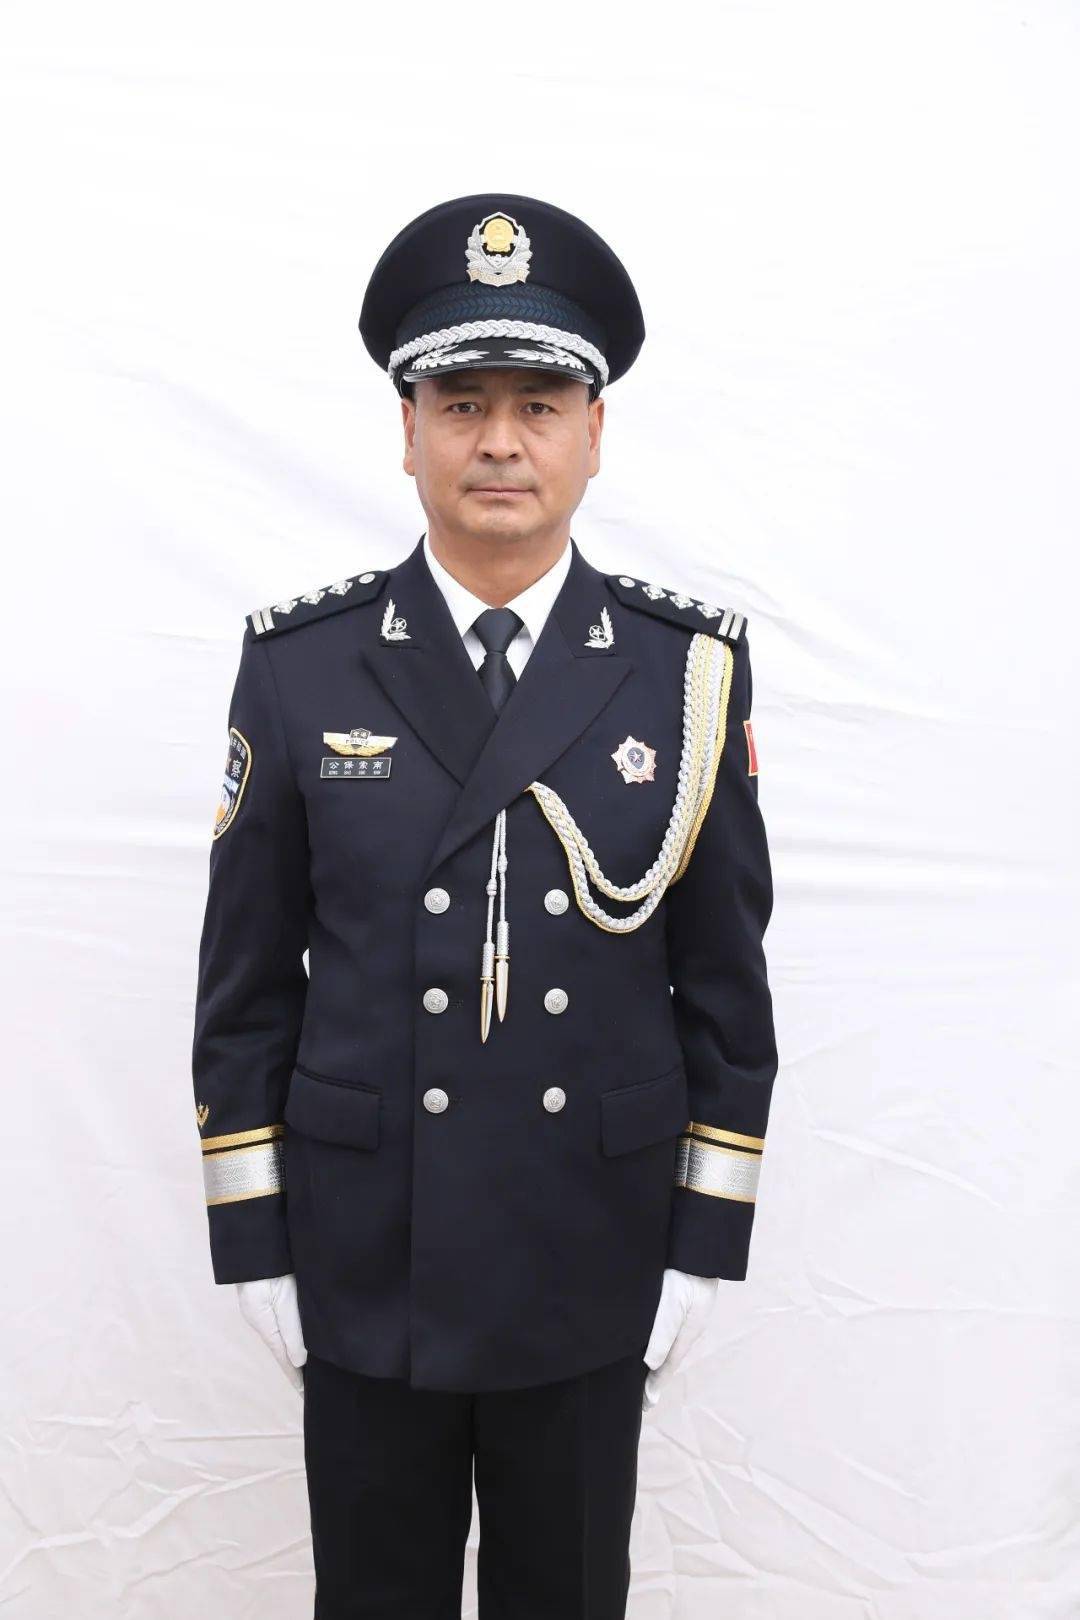 【你好,警察节】庆祝第二个中国人民警察节系列活动之送你一张警服